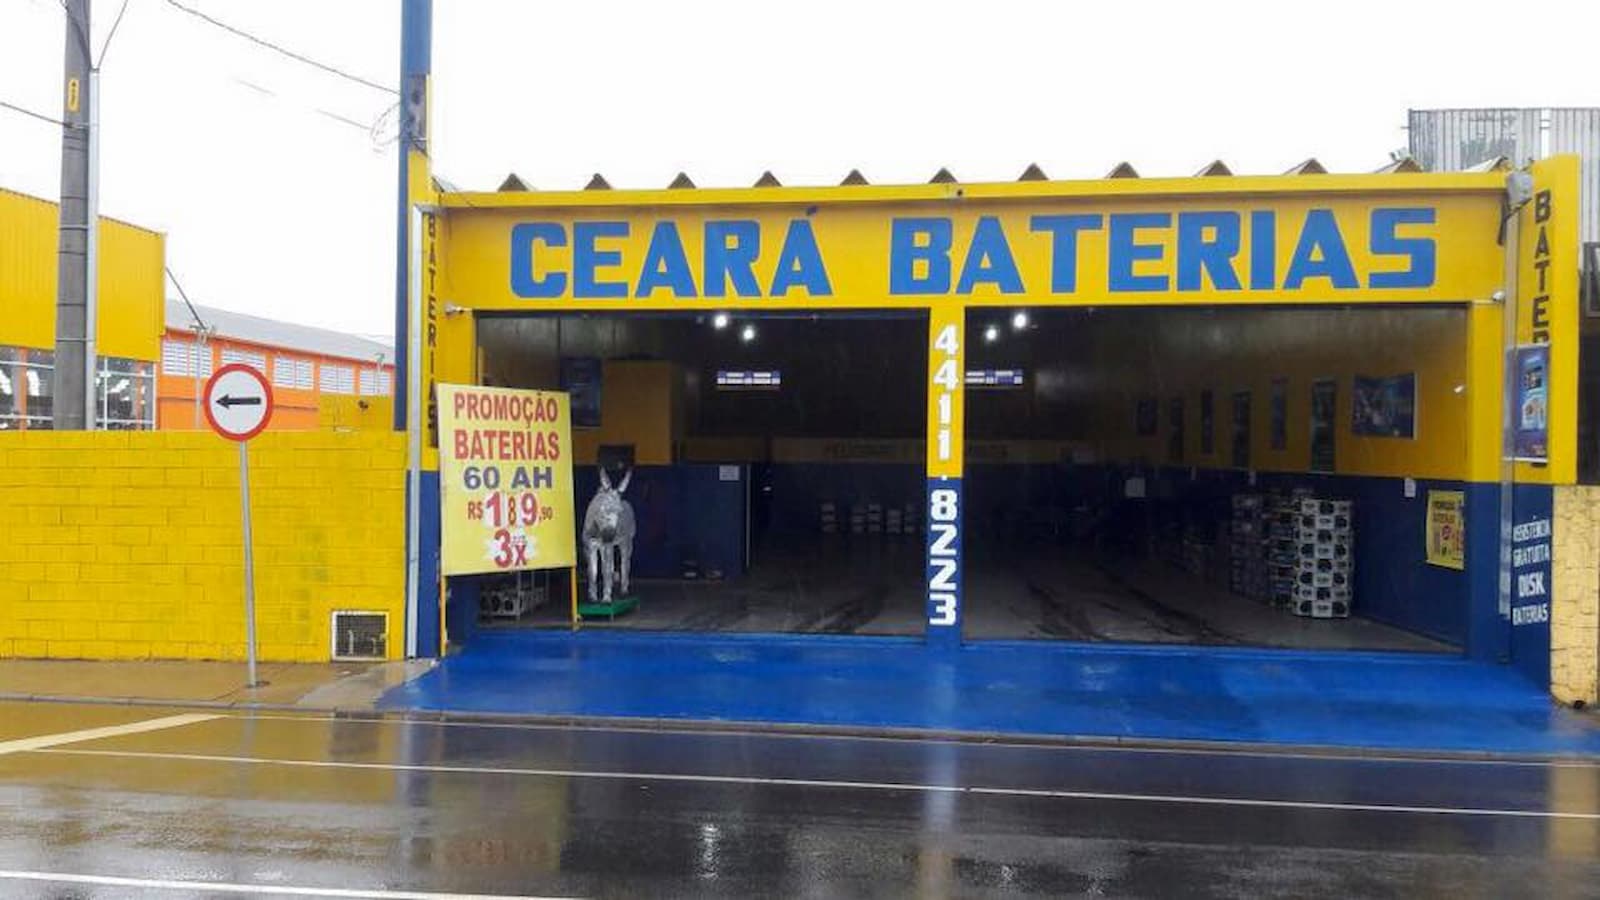 Ceará Baterias